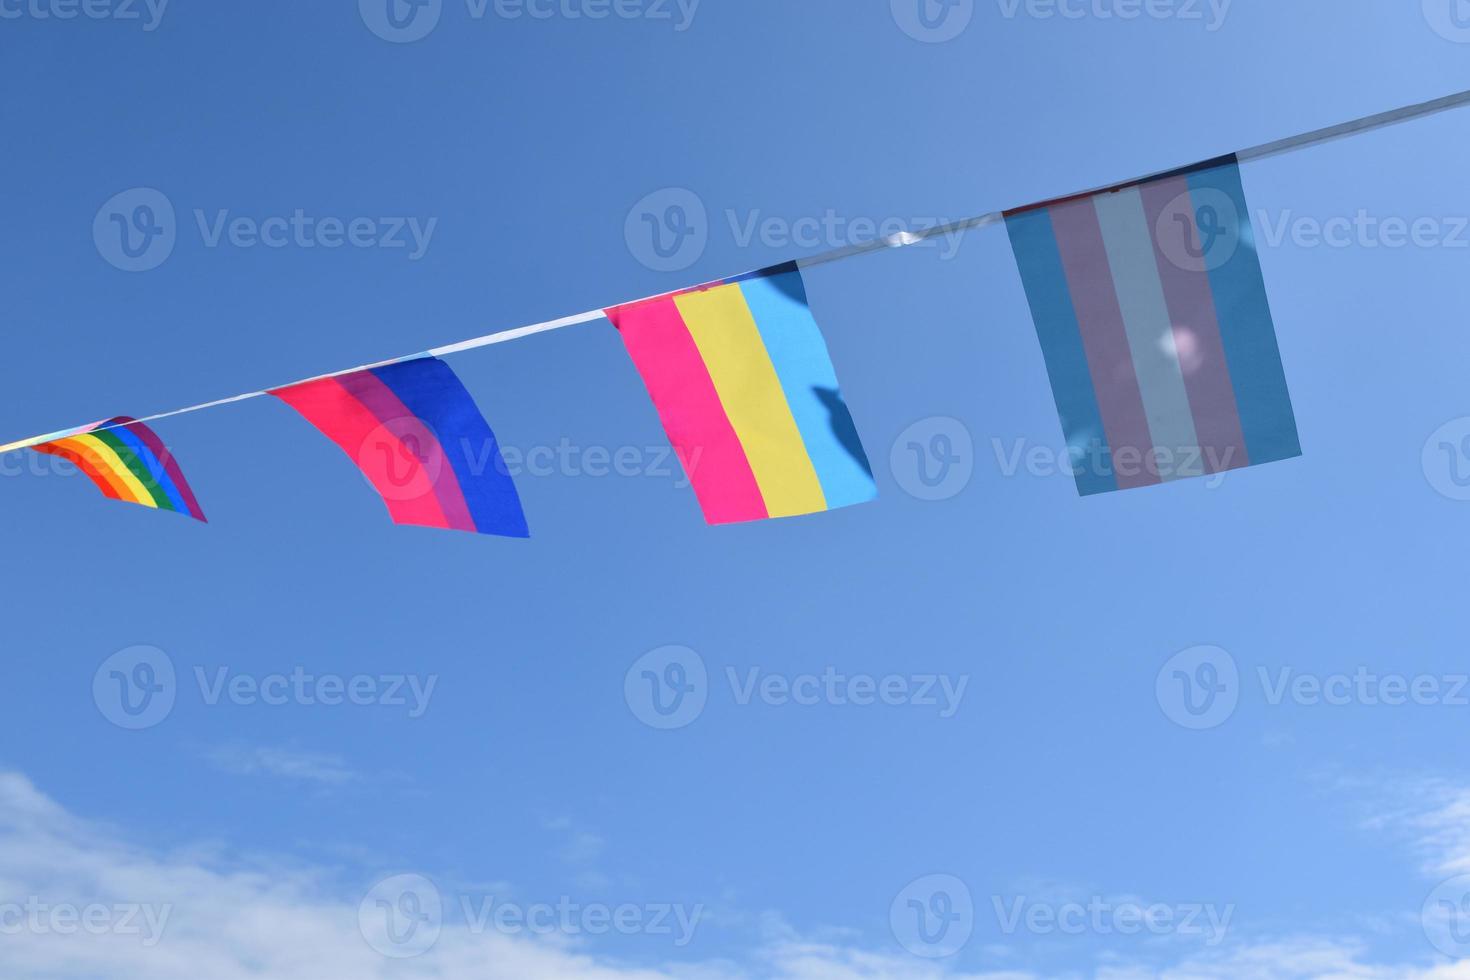 bandeiras lgbtq foram penduradas no fio contra bluesky em dia ensolarado, foco suave e seletivo, conceito para celebrações de gênero lgbtq no mês do orgulho em todo o mundo. foto